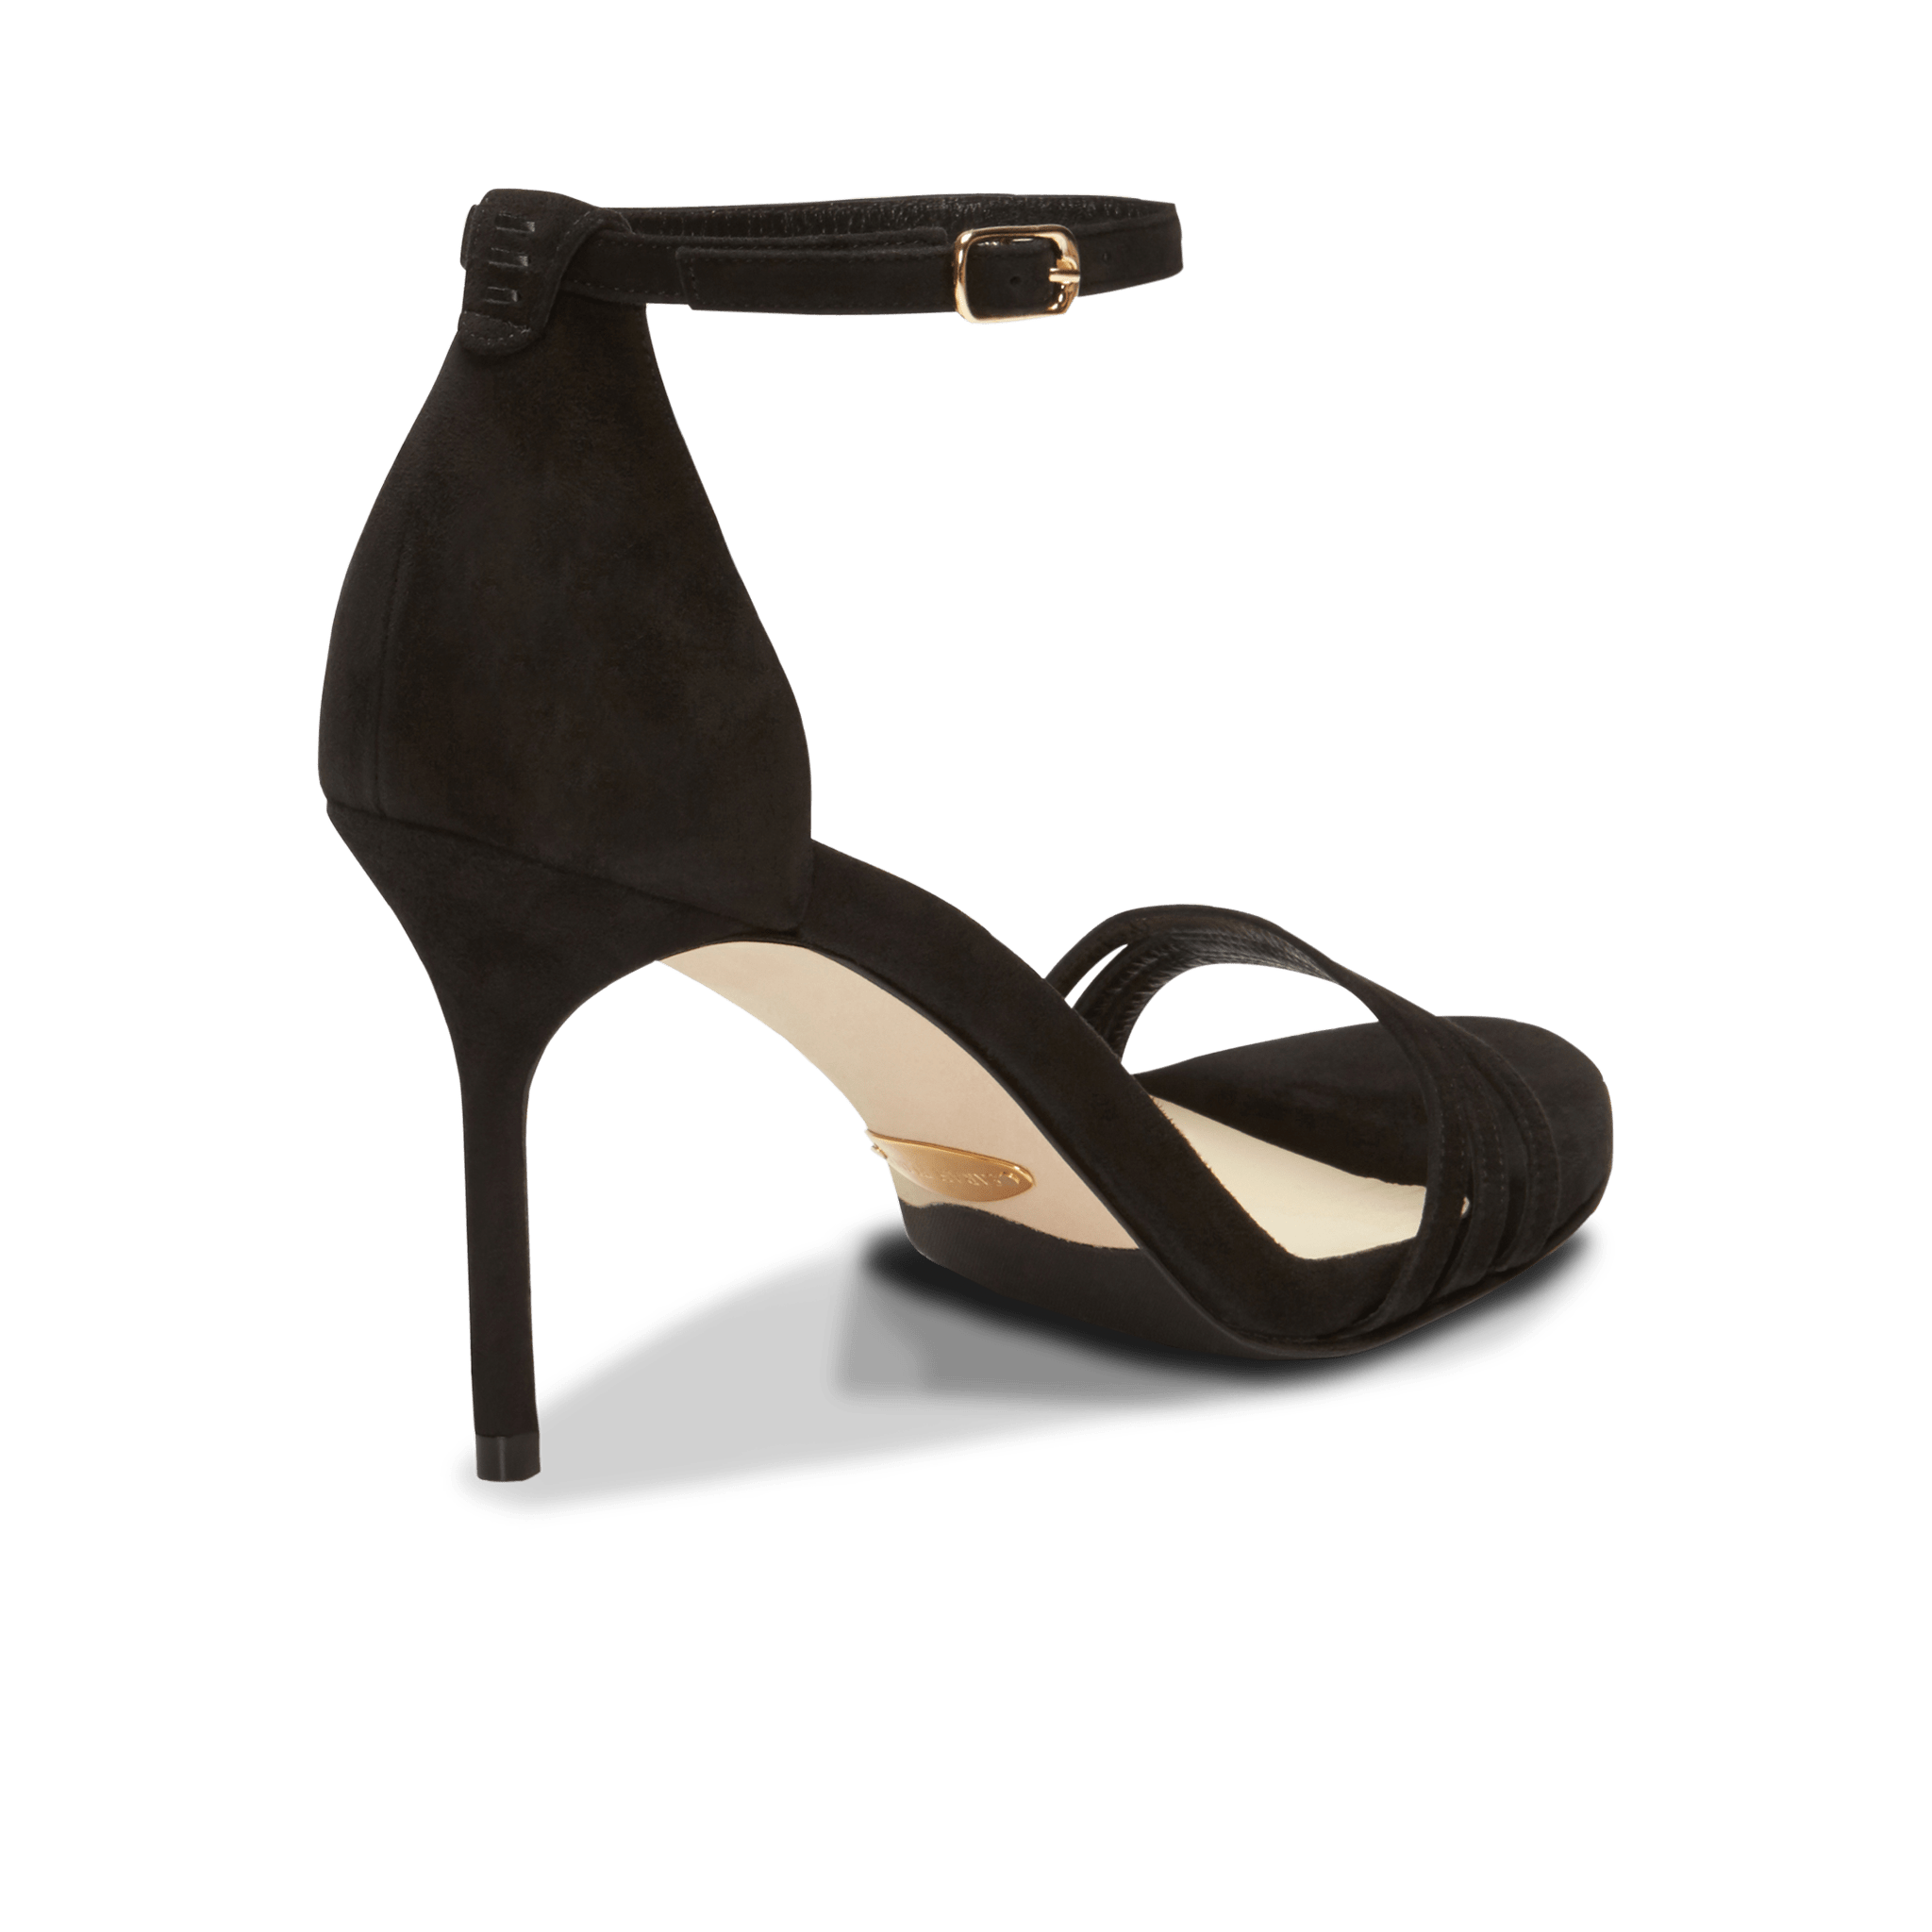 Amazon.com | Divanne Pumps Shoes, Women's Stiletto High Heels Buckle Suede  Pumps Pointy Toe Slip-On Office Pumps for Party Dress-Black-PU-5.5M US |  Pumps